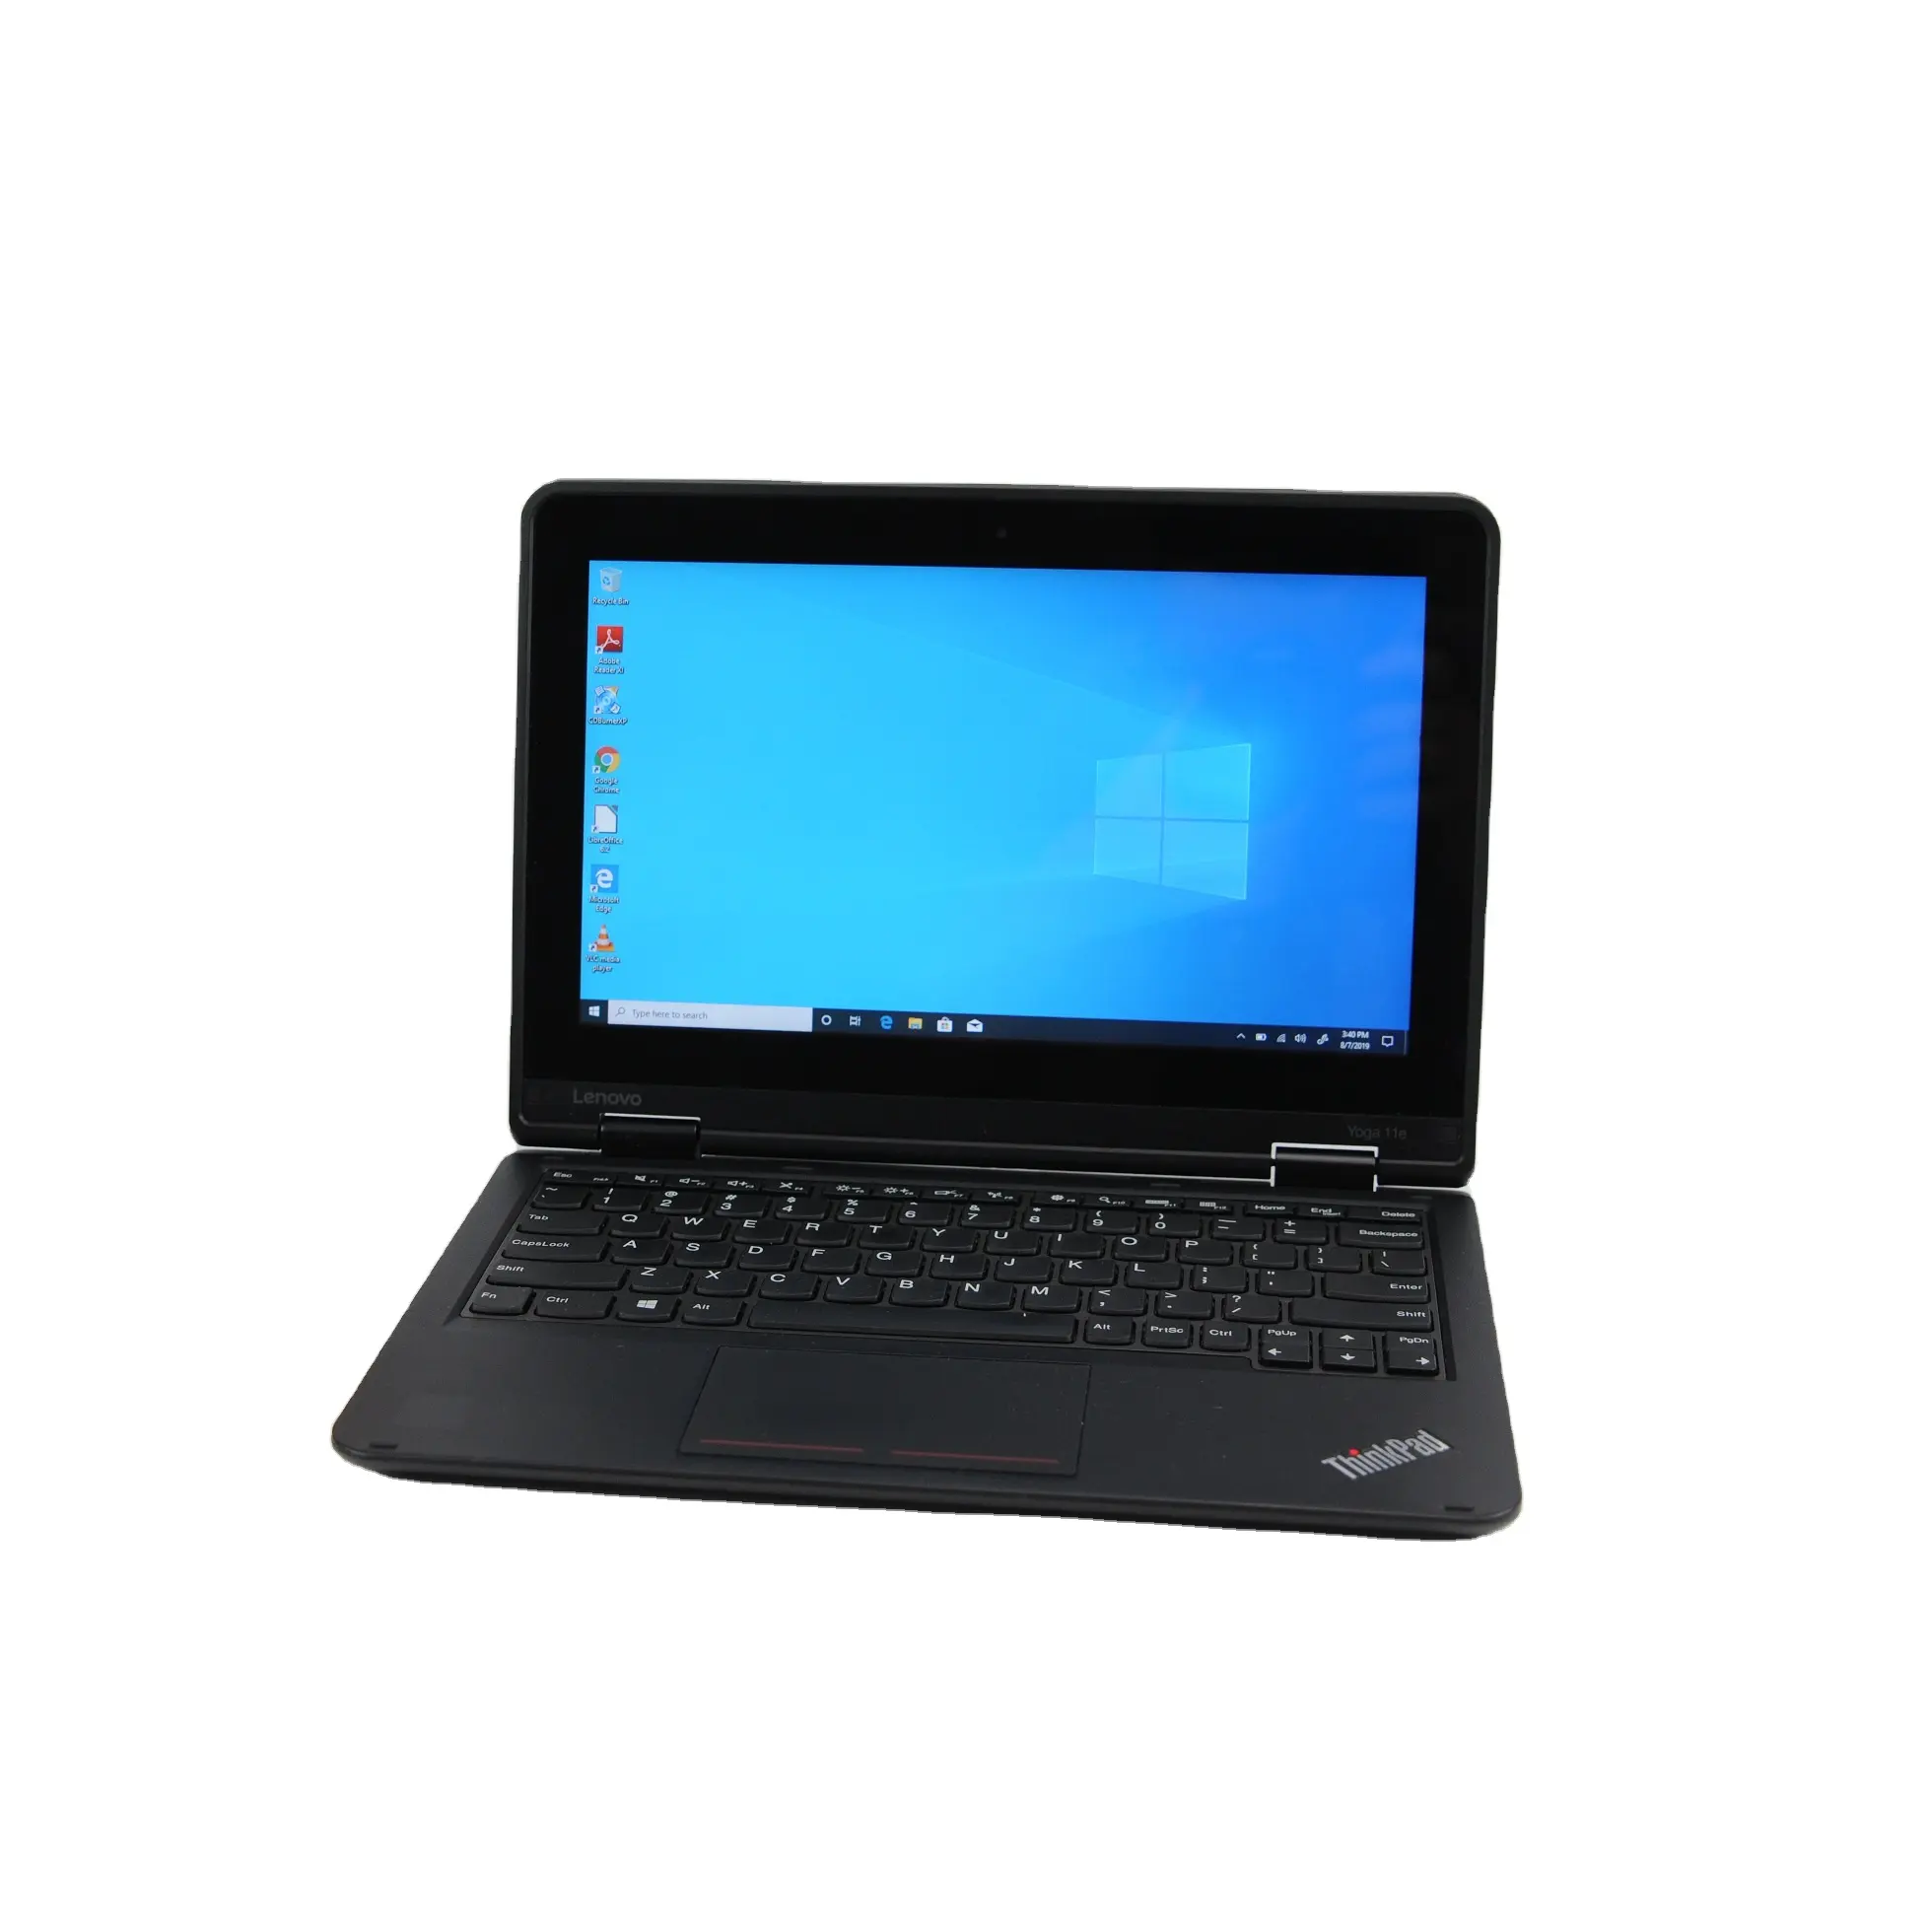 Usado preço barato Laptops Yoga 11e 3rd Gen Intel Celeron N3150 4GB RAM 128GB SSD para uso de computação casual a preços acessíveis